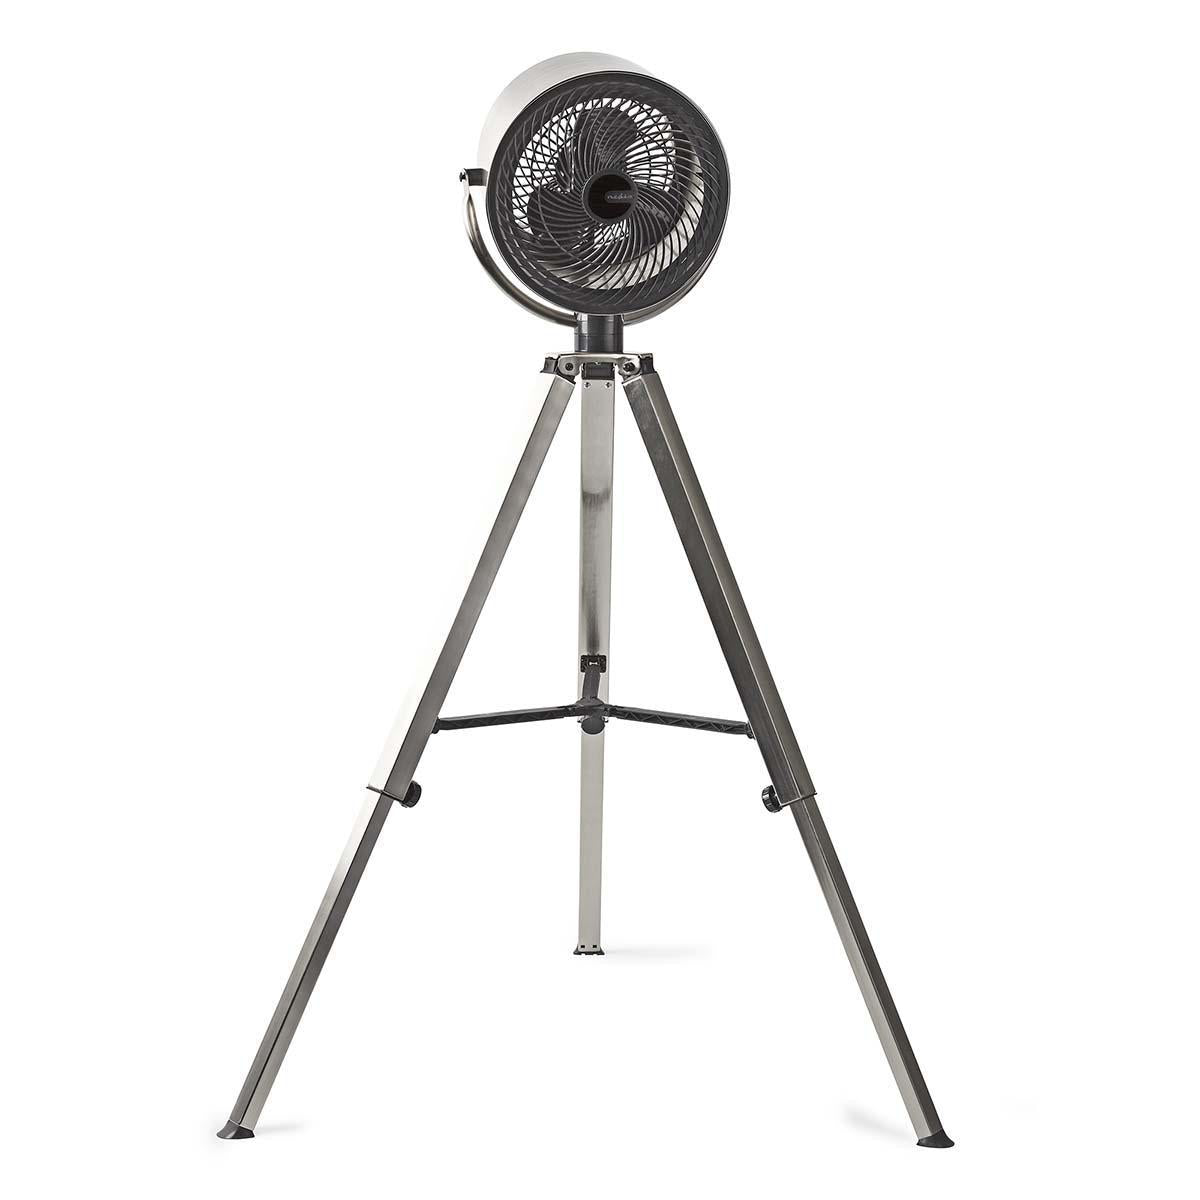 Nedis Ventilator op Driepoot | Diameter 25 cm | 3 snelheden | Geborsteld metaal - o2health